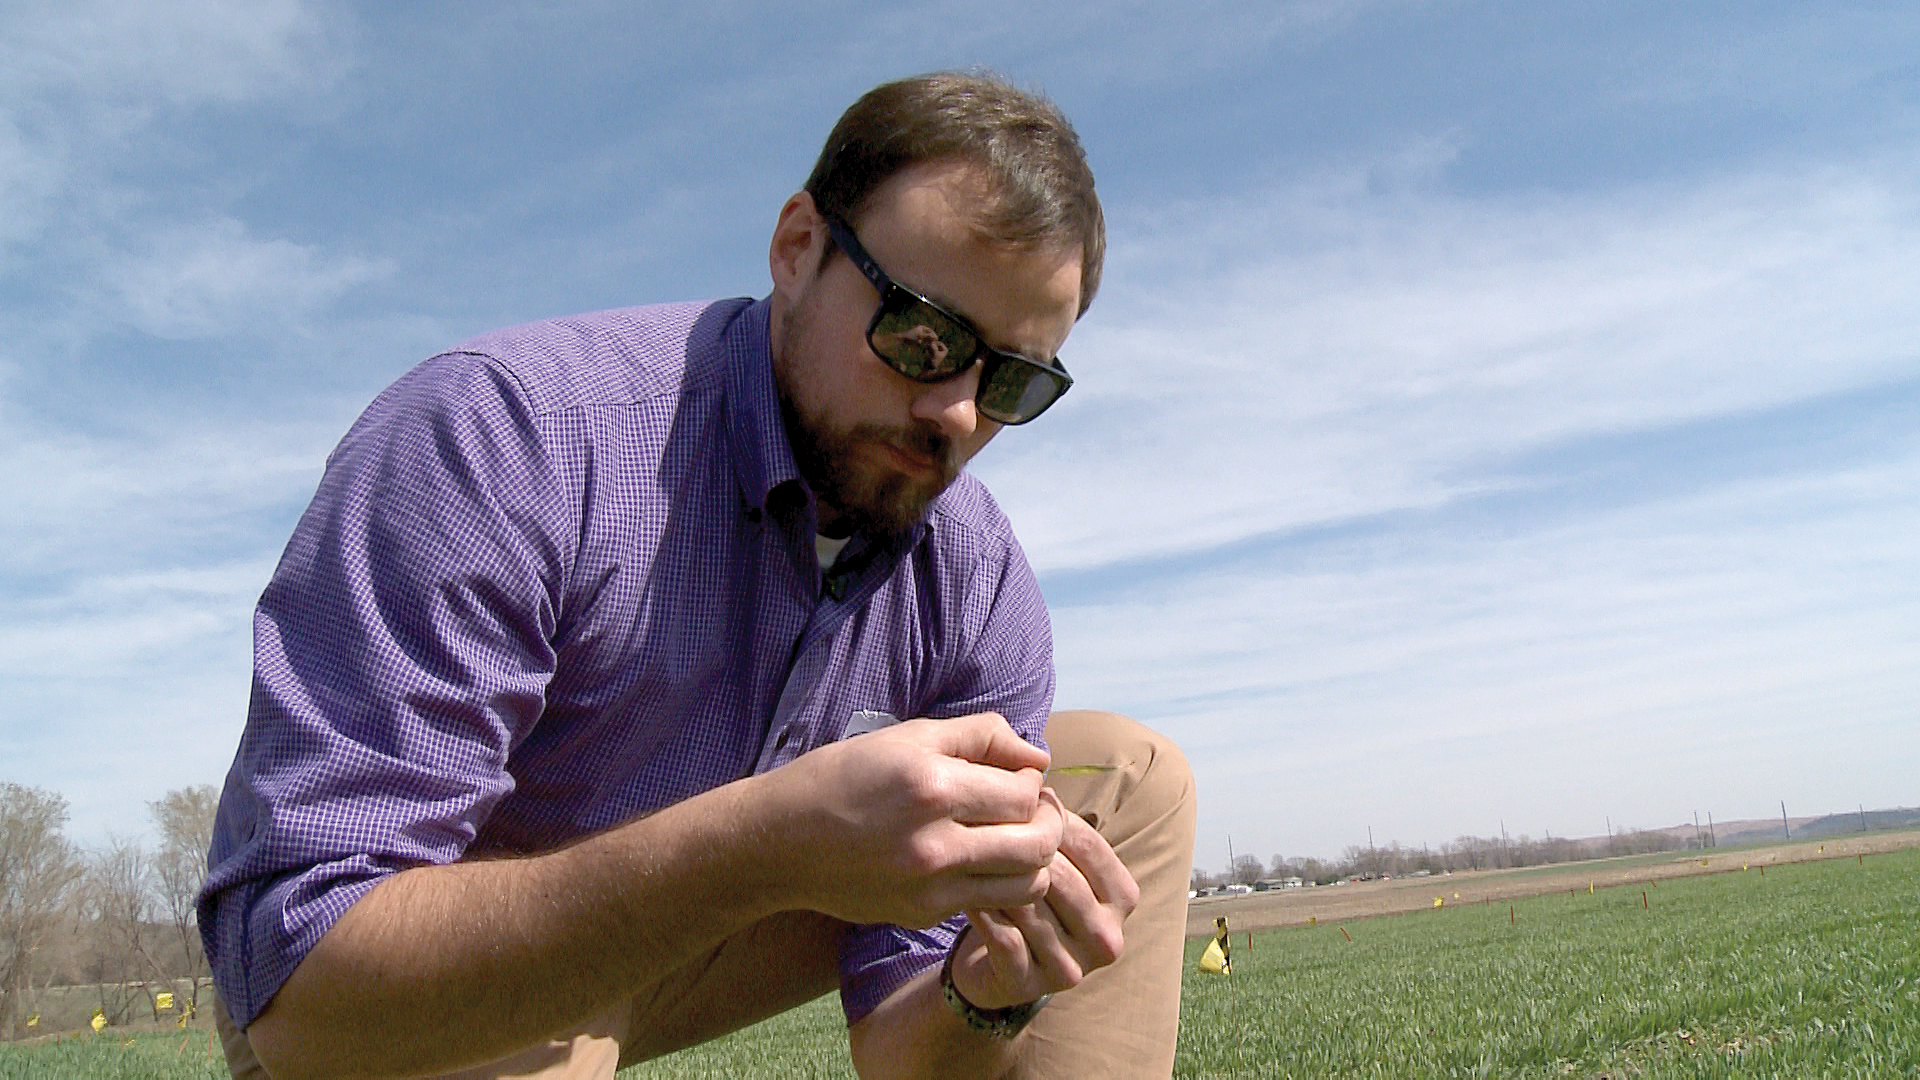 Romulo Lollato examines wheat in a field